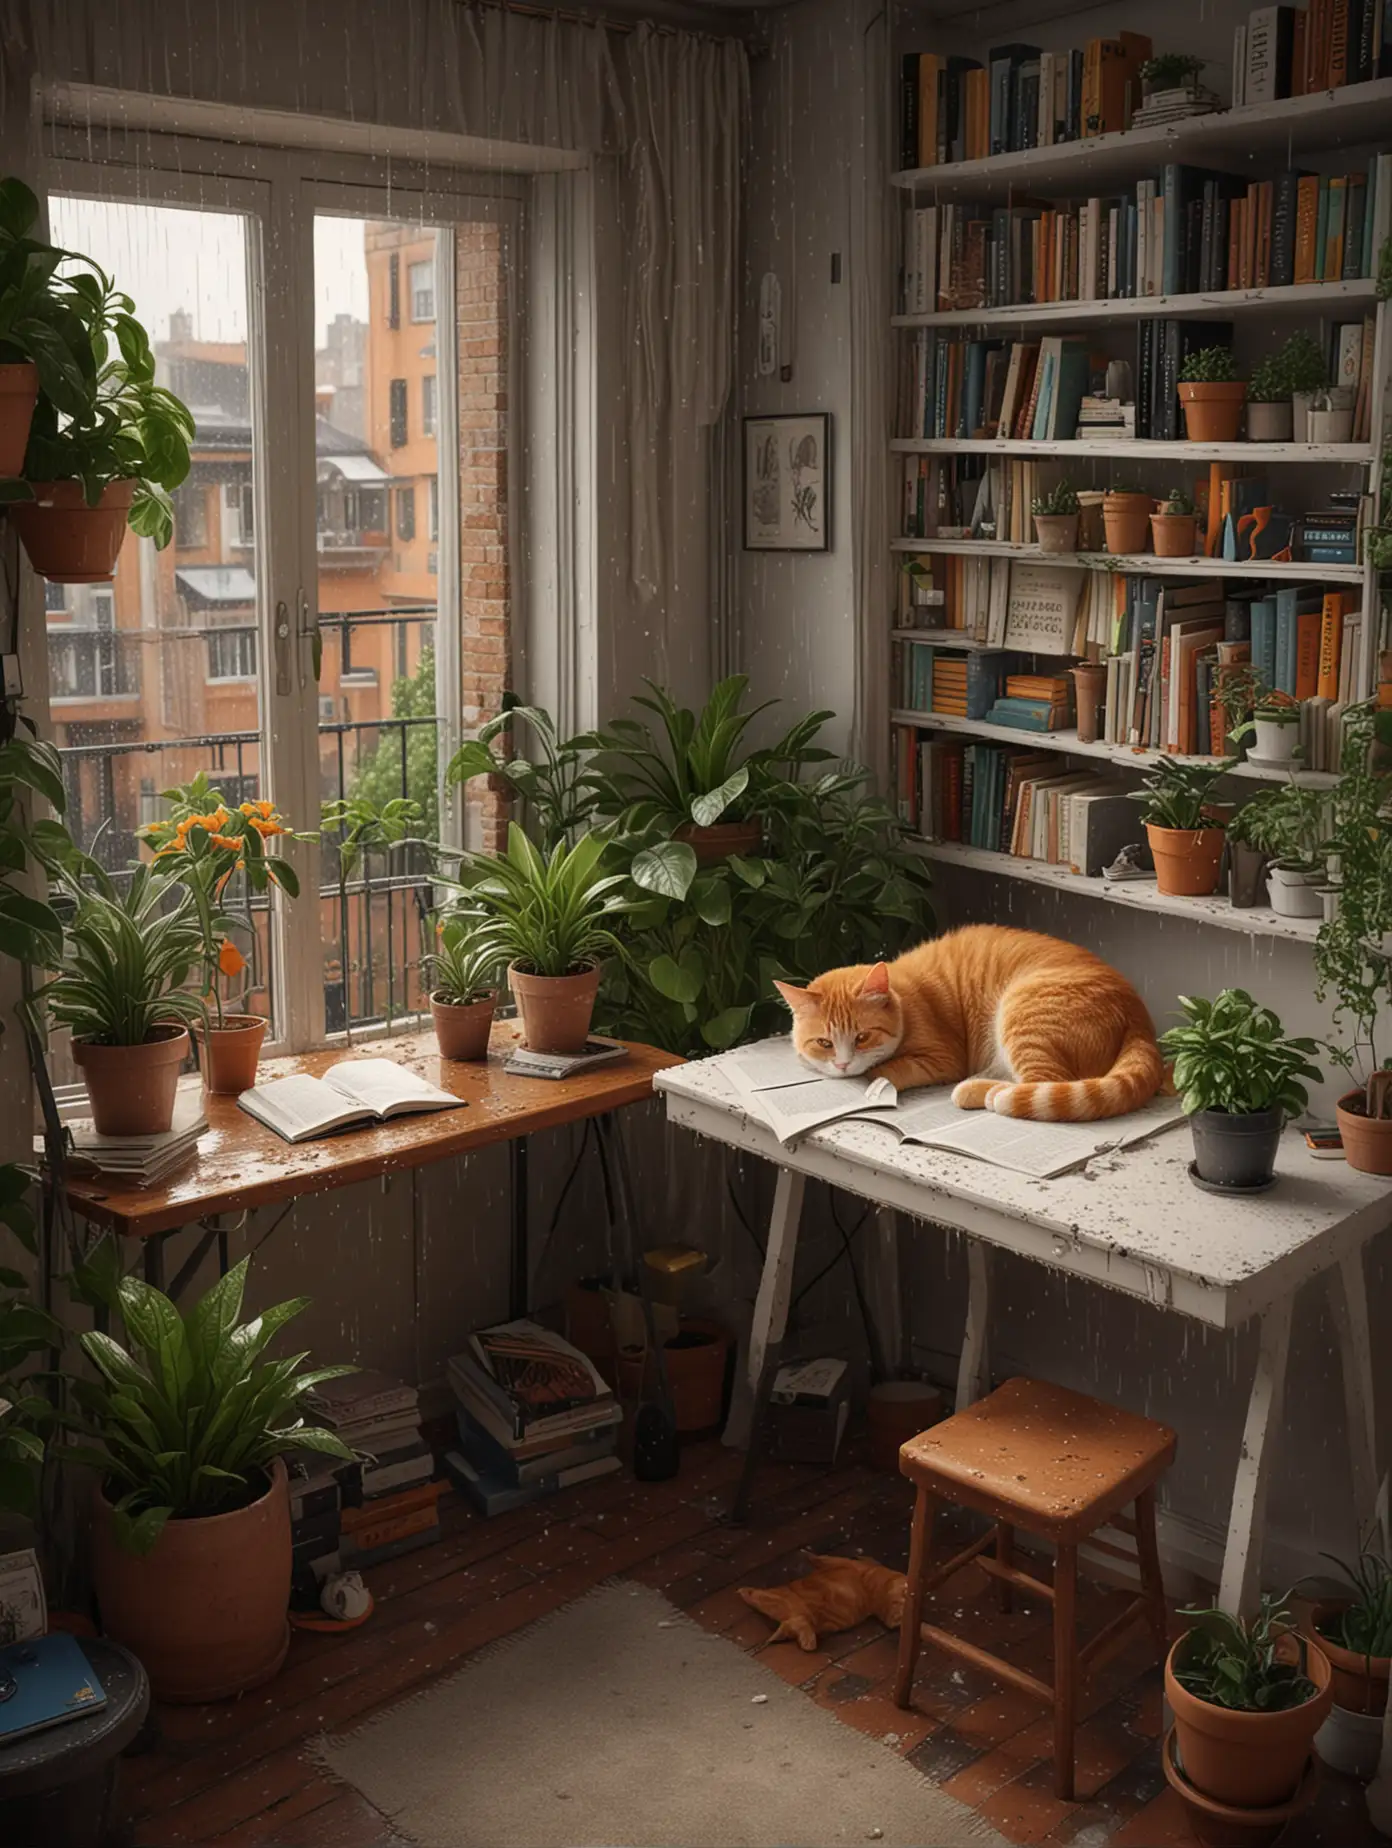 书房外是种满盆栽植物的阳台 书桌 电脑 一整面墙的书 细节满满 高清真实细节 8k高清 地上有一个橘猫在睡觉 白色的床 窗外楼房下着雨 台灯 温馨